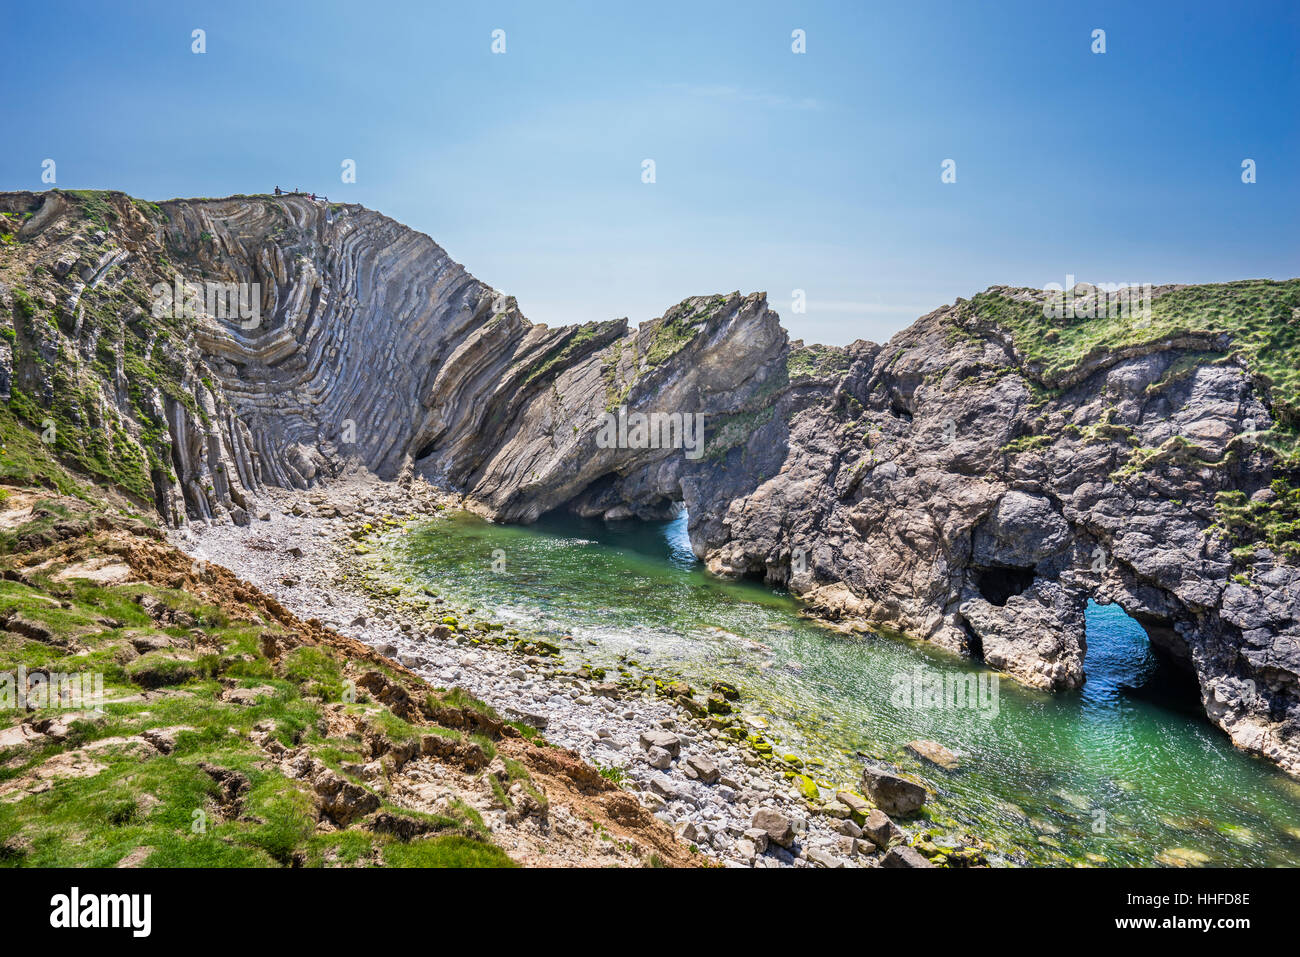 Gran Bretagna, Sud Ovest Inghilterra, Dorset, Jurassic Coast, Lulworth Cove, ripiegata di strati di calcare al cove del foro di scale Foto Stock